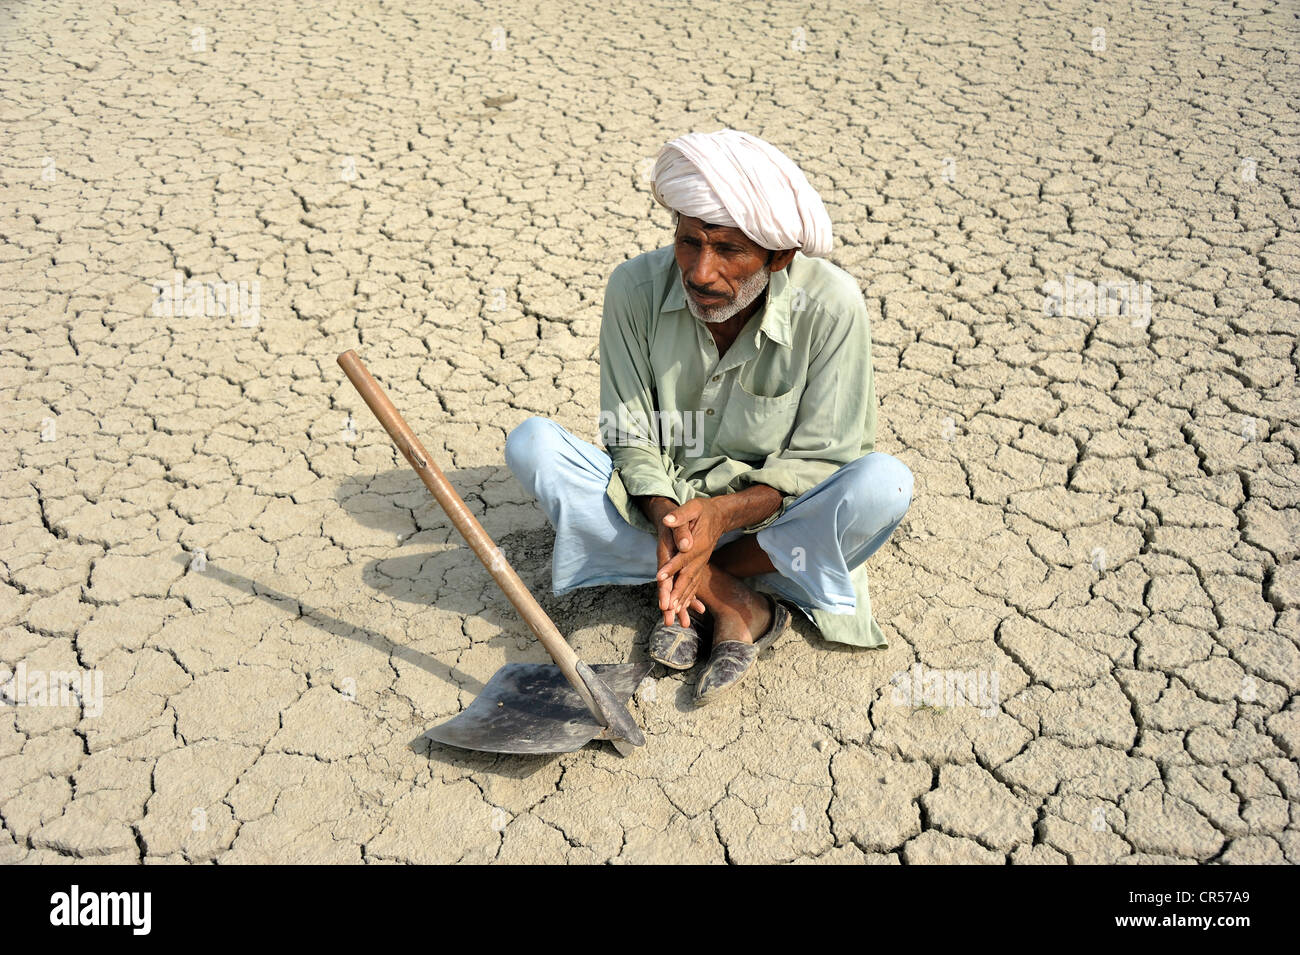 farmer-sitting-on-dried-loamy-soil-basti-lehar-walla-village-punjab-CR57A9.jpg